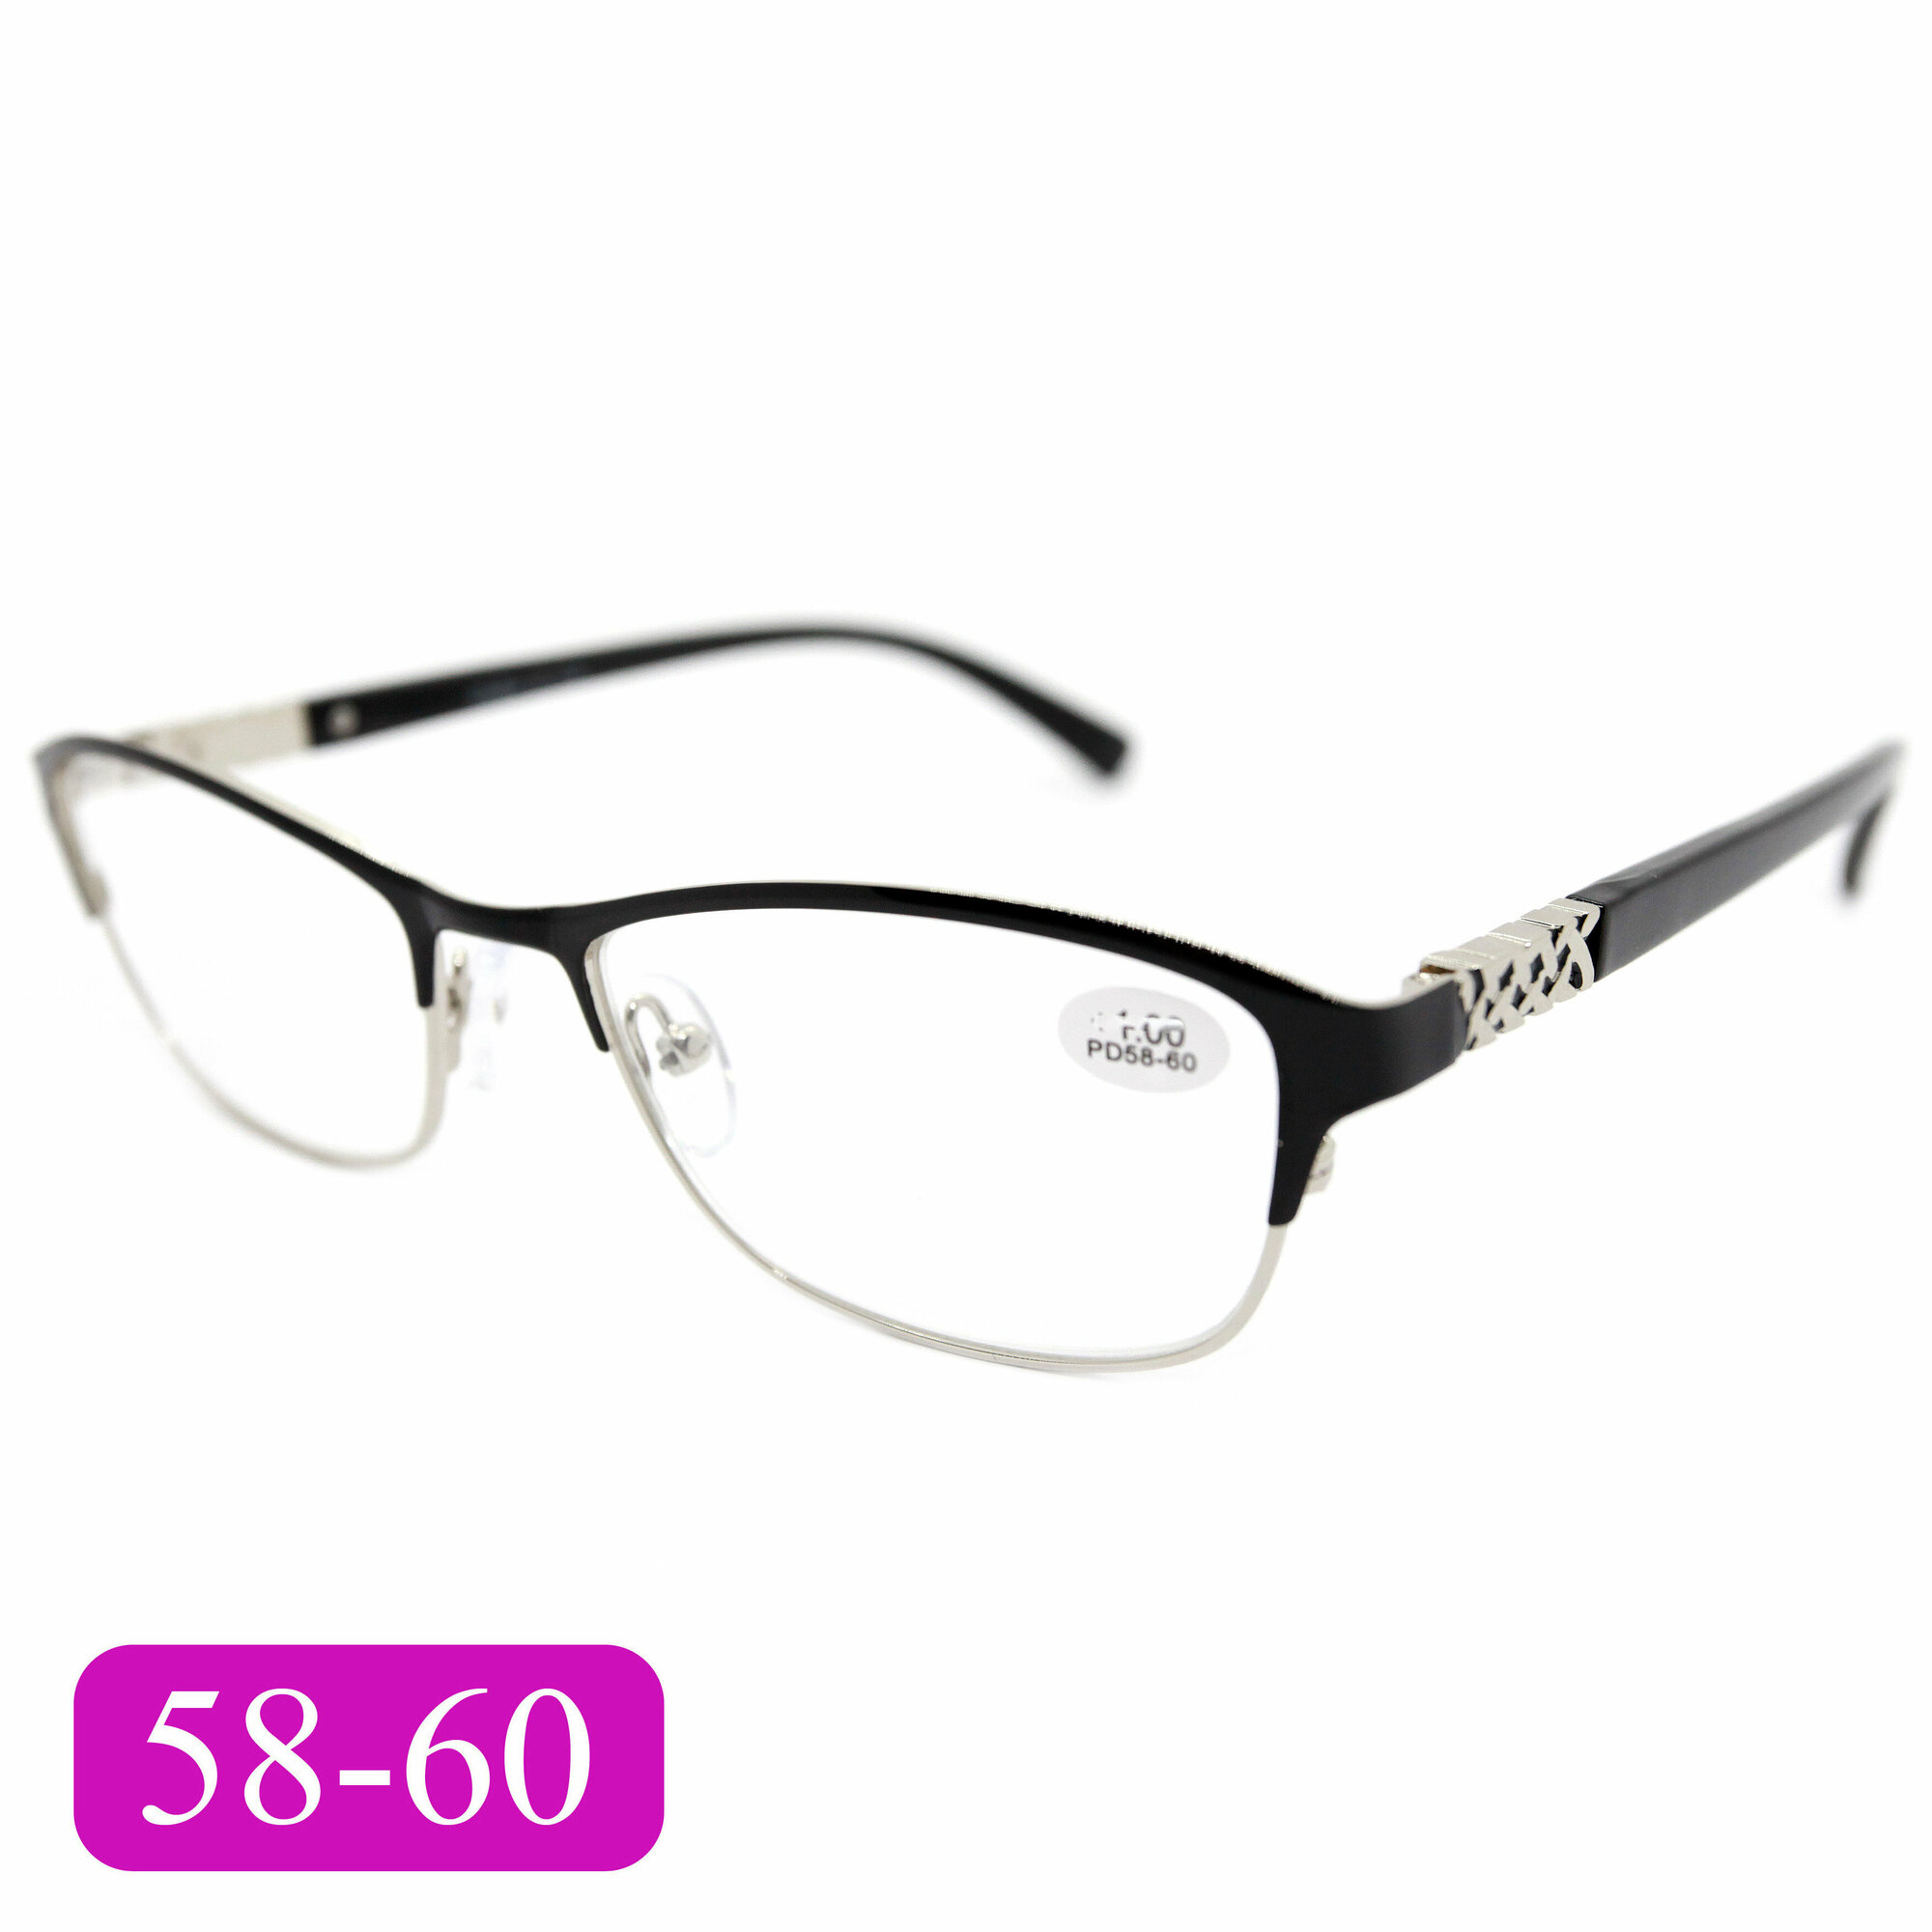 Готовые очки 58-60 с диоптриями (+1.75) GLODIATR 1913 C1 цвет черный без футляра РЦ 58-60